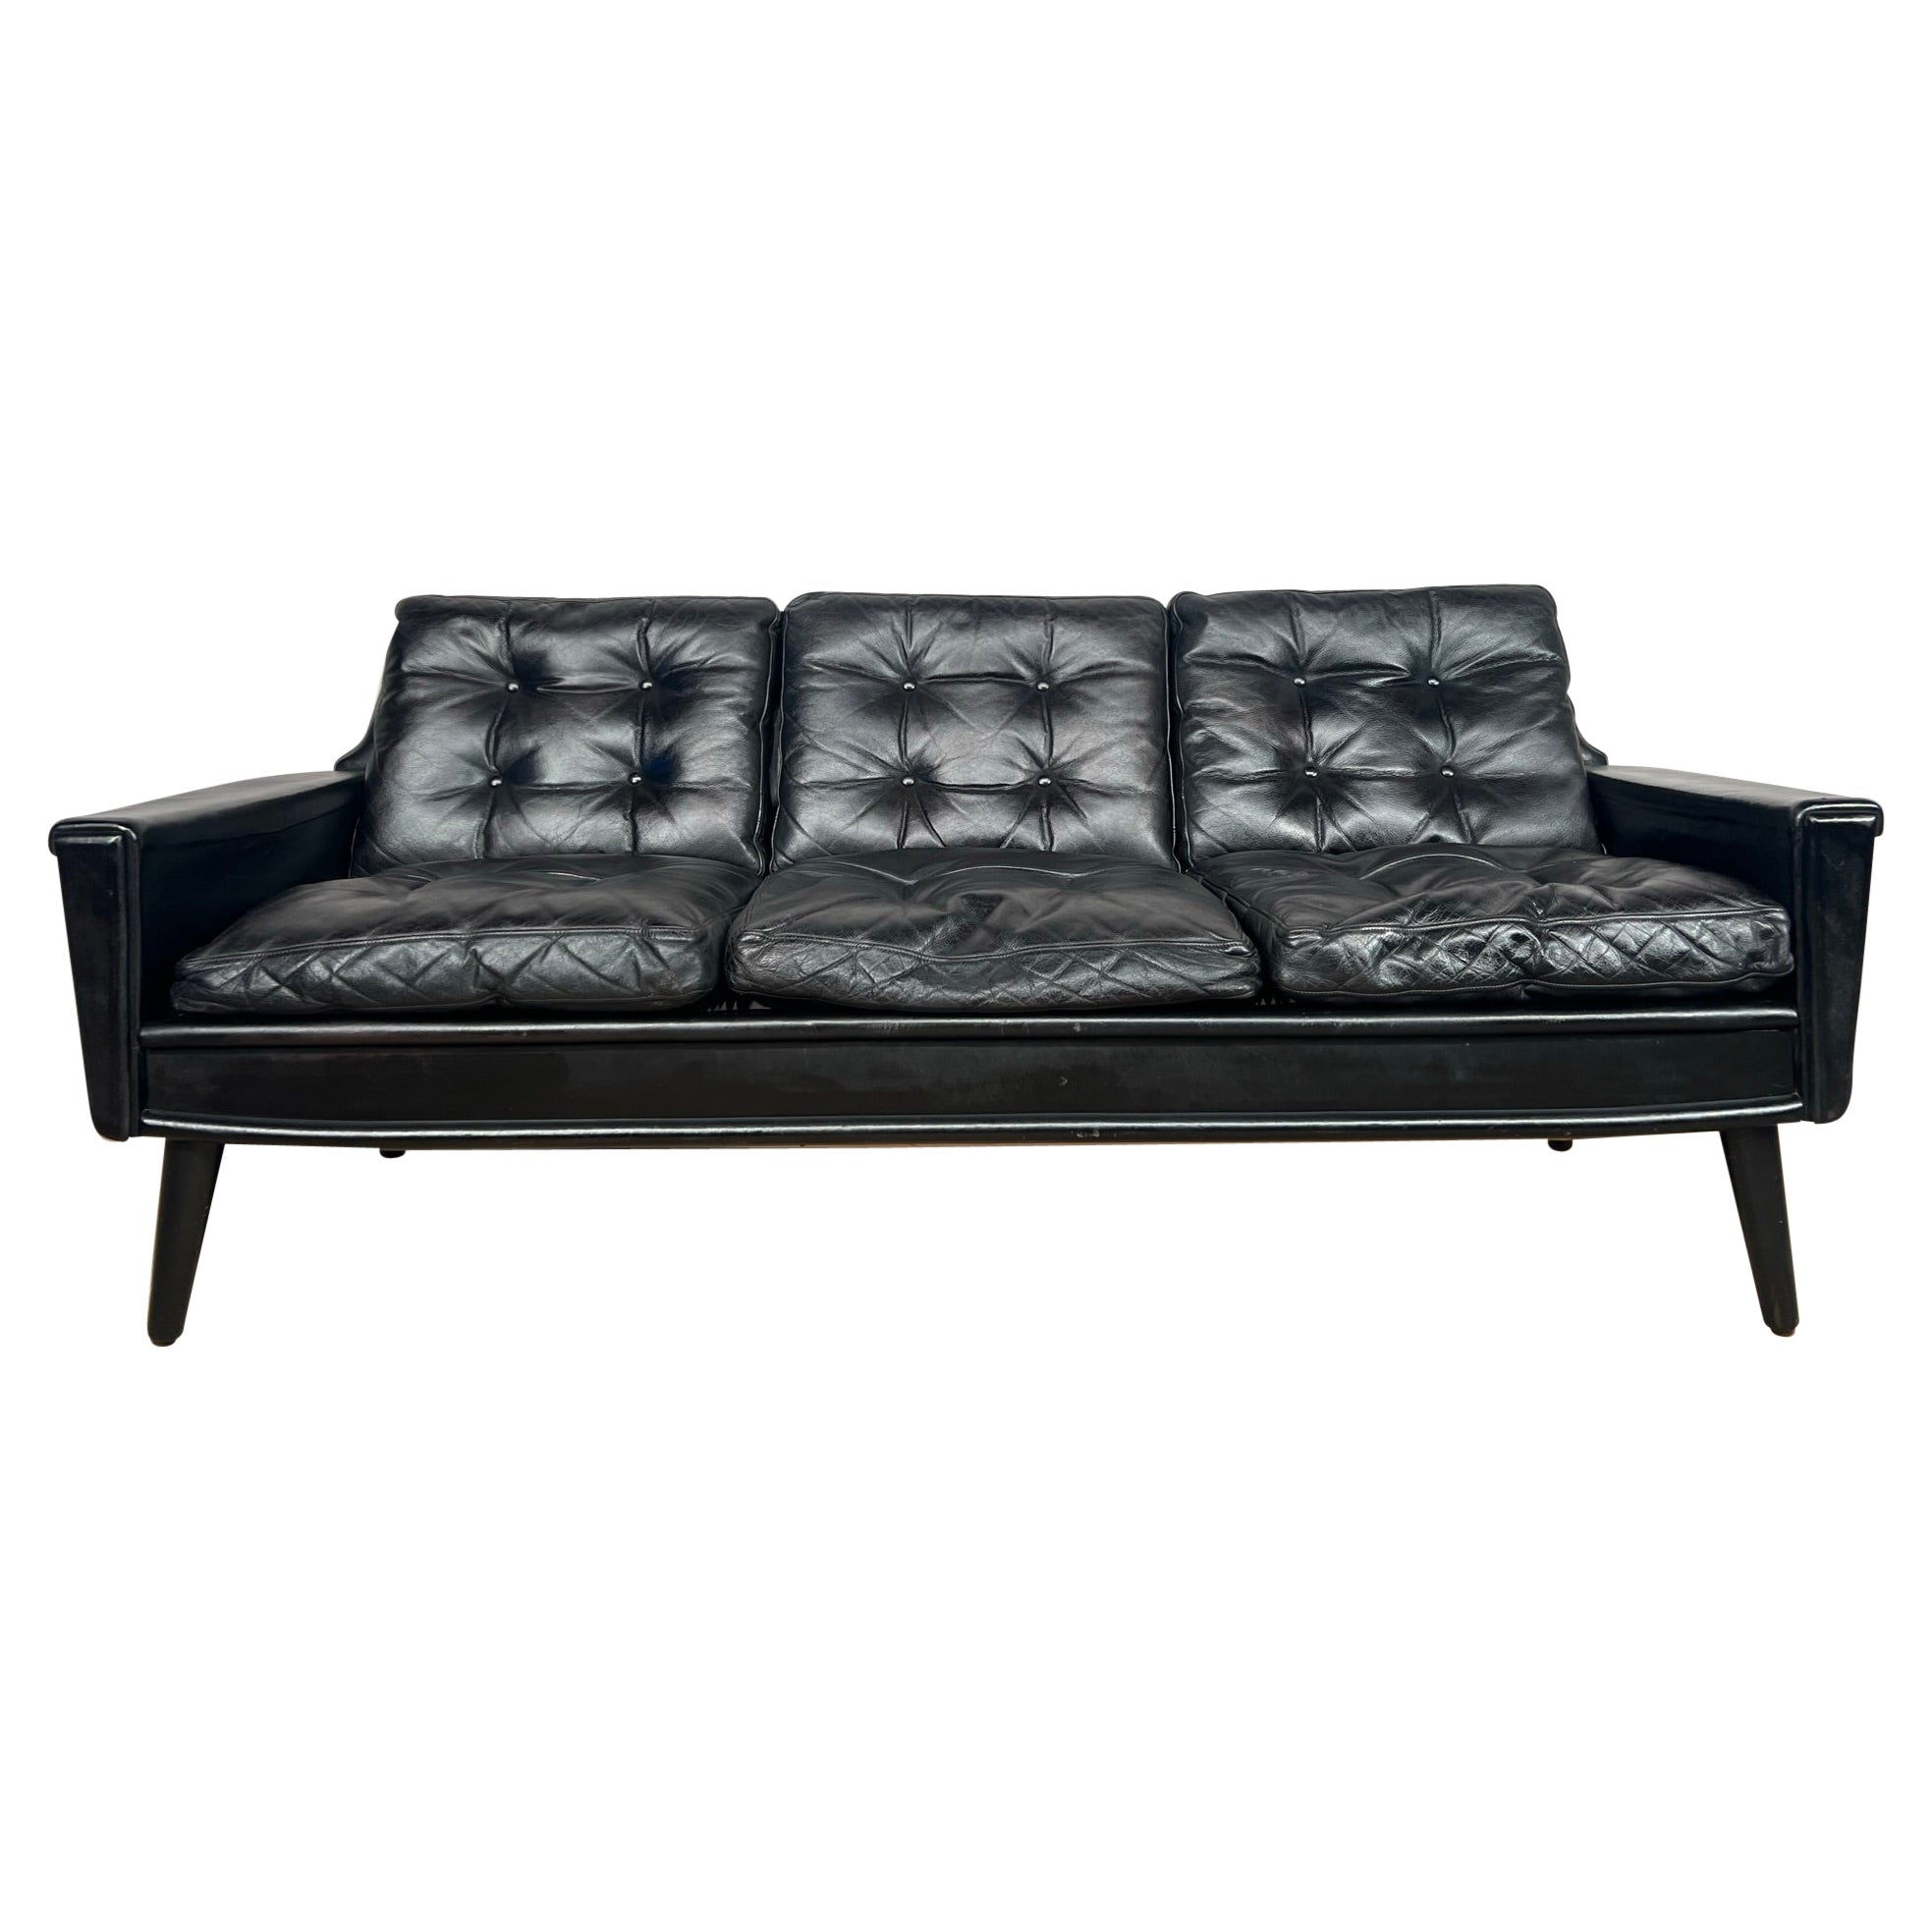 Stilvolles dänisches dreisitziges Vintage-Sofa aus schwarzem Leder